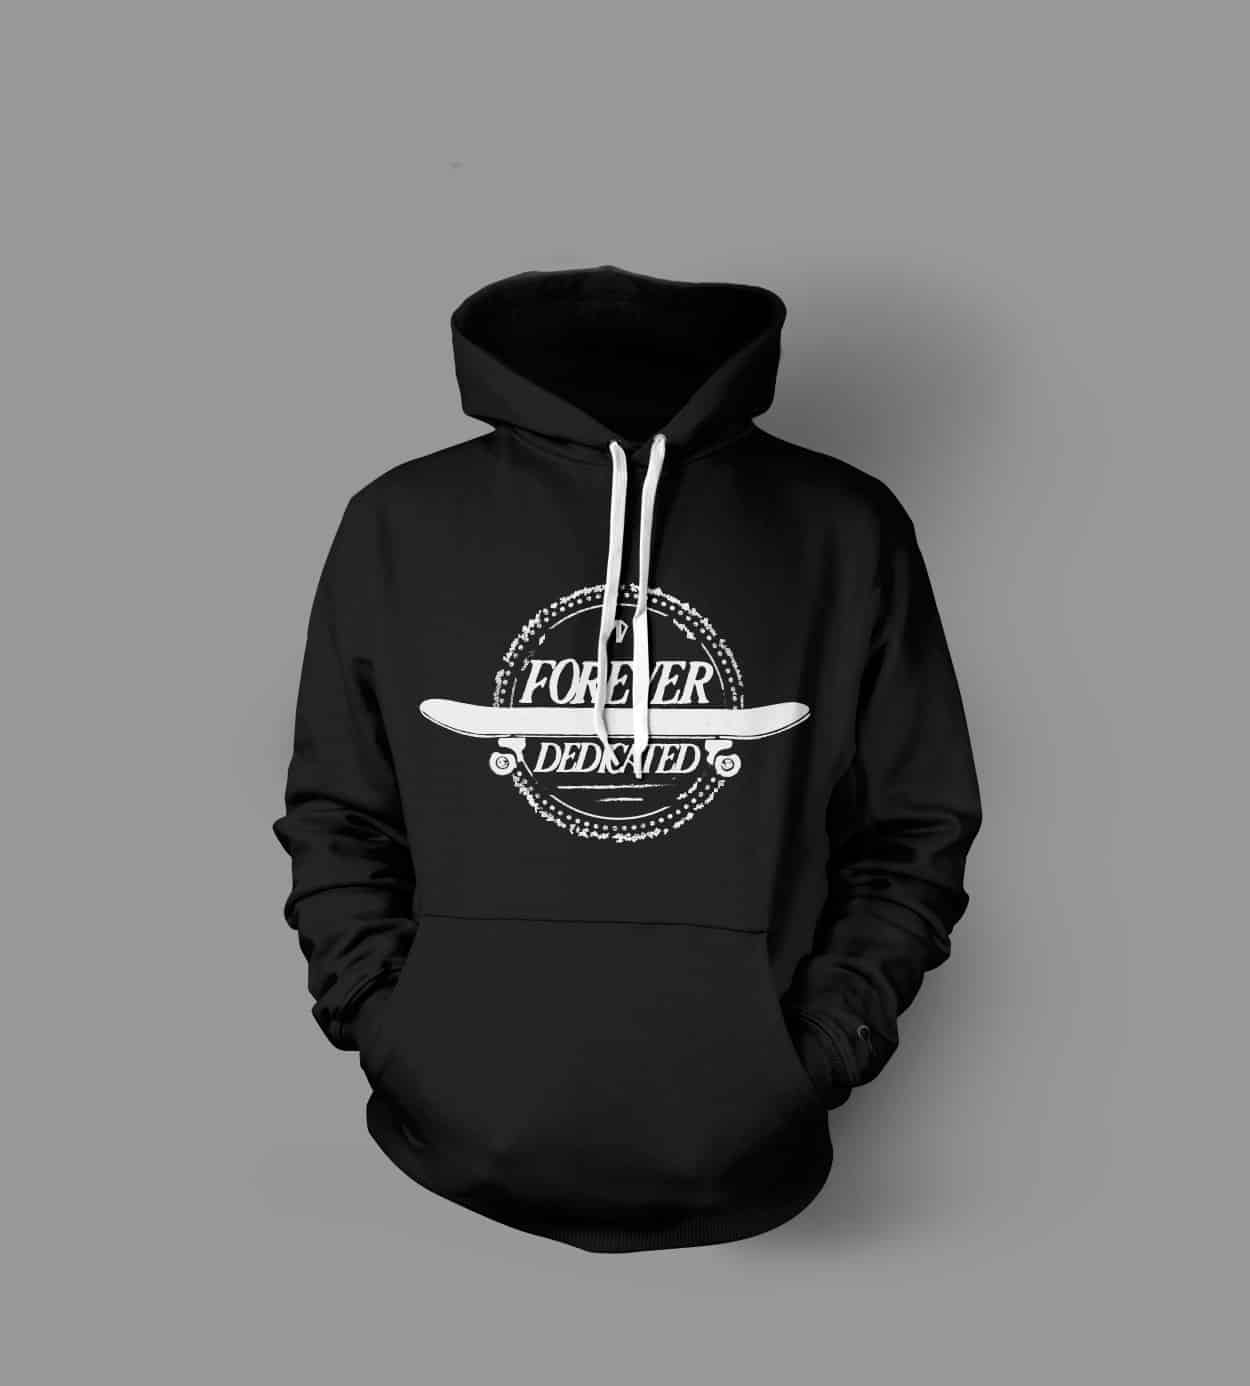 forever dedicated - hoodie design